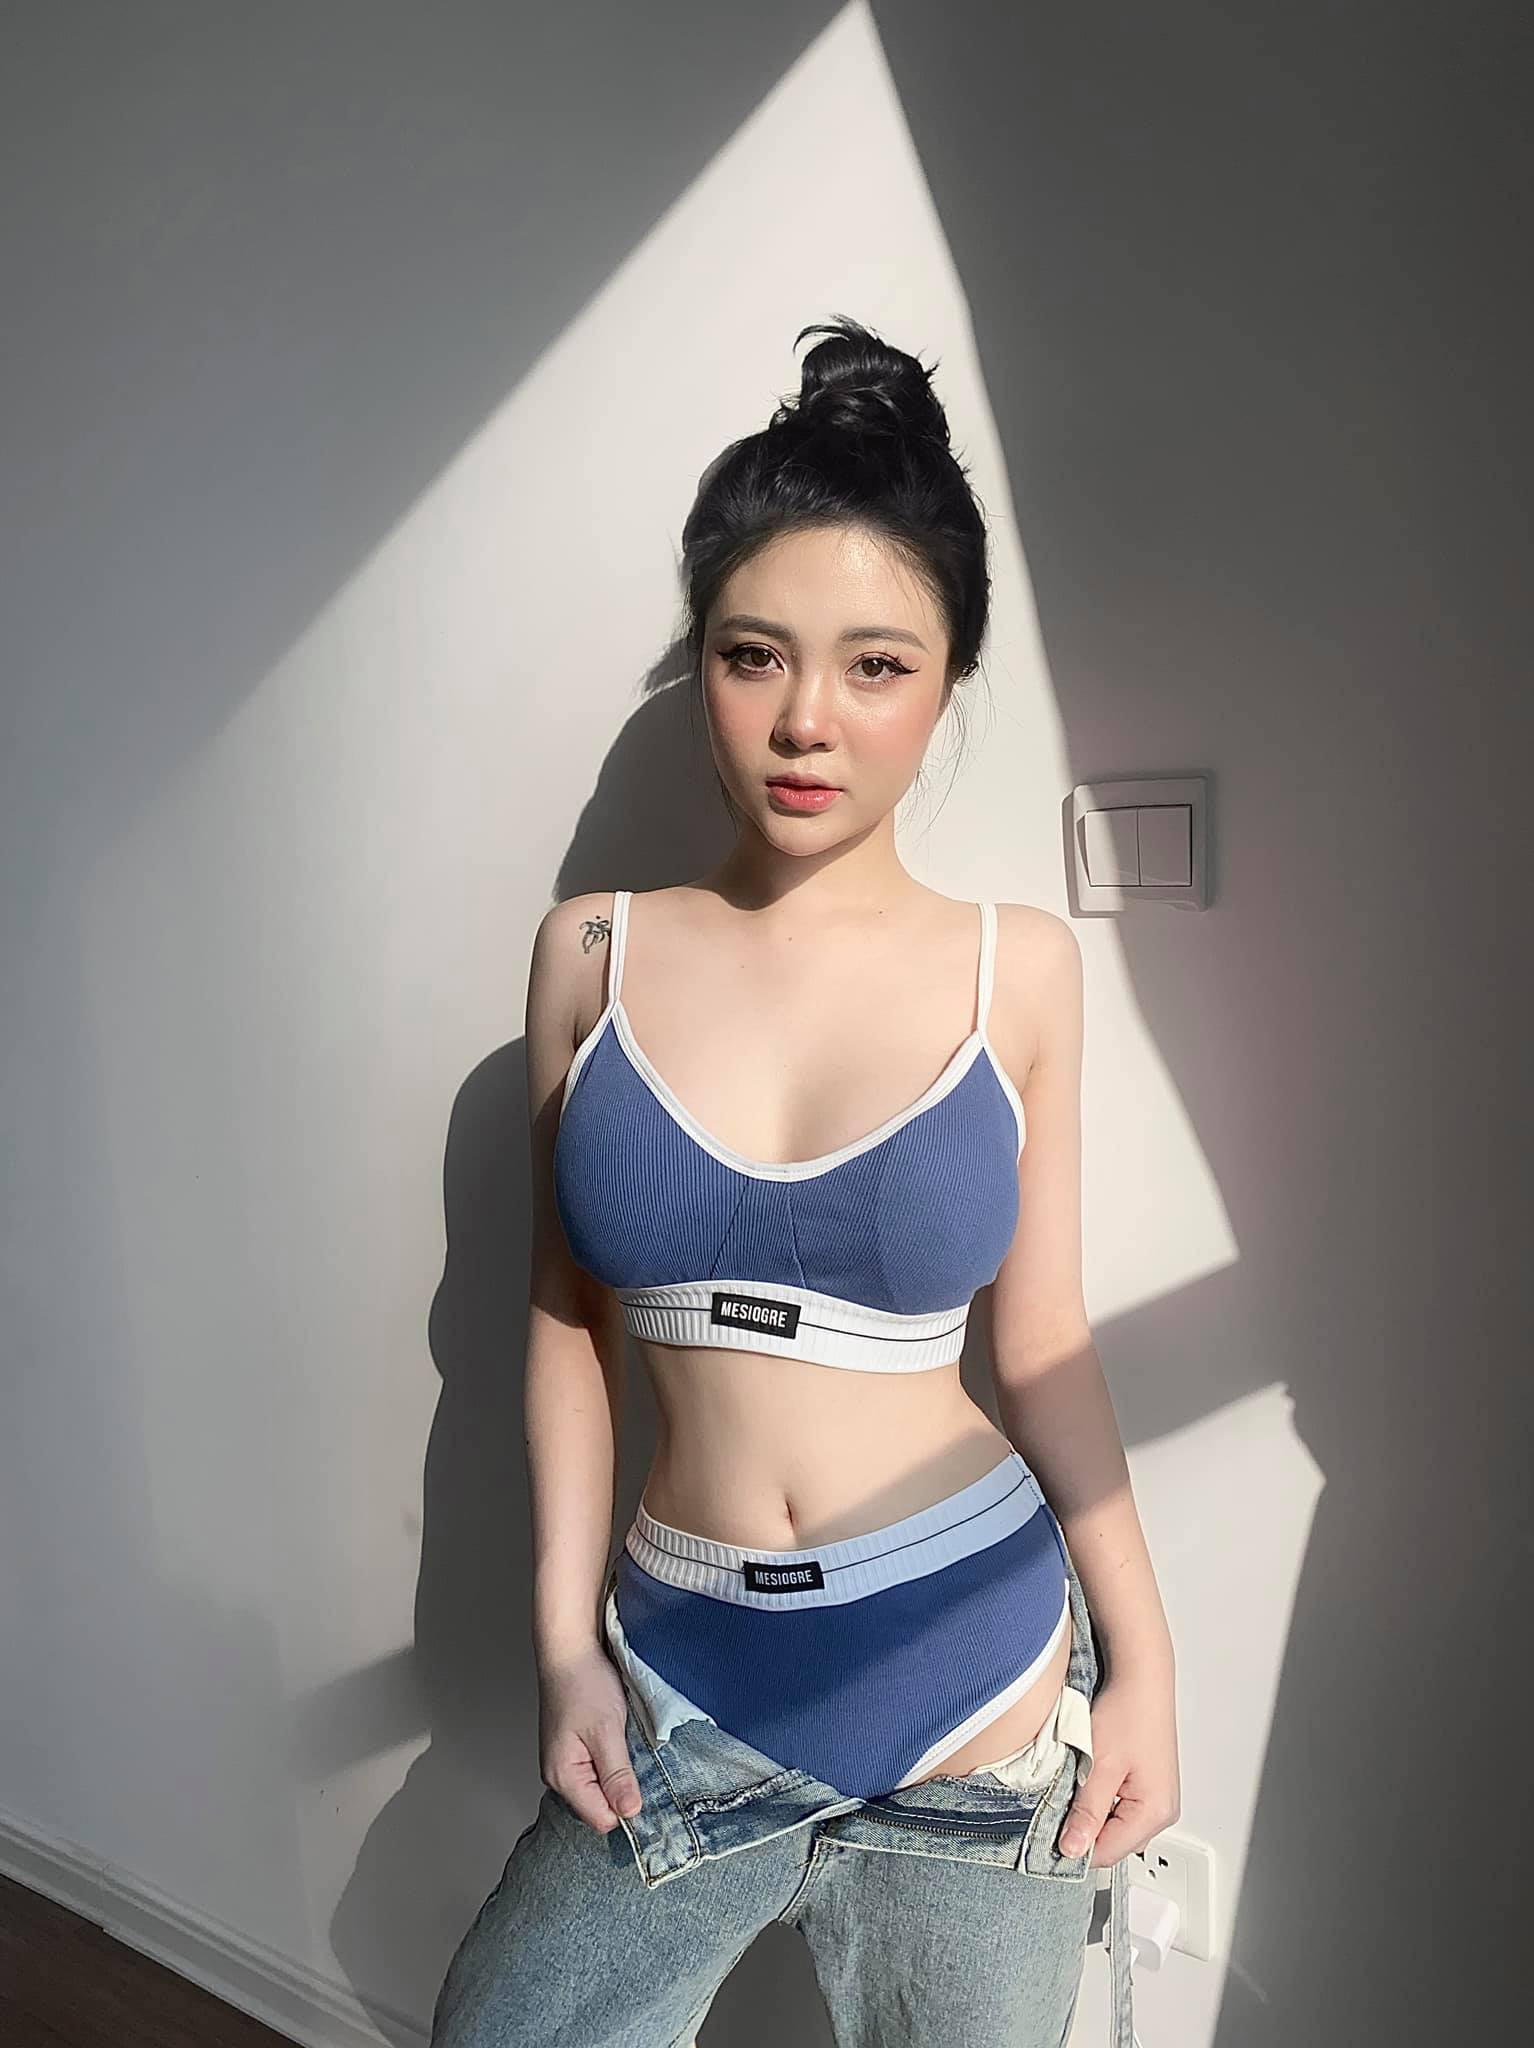 Hot streamer Ba Vì “Trang Chuối” gặp lỗi nhạy cảm vì chiếc quần thun ngắn? - 1